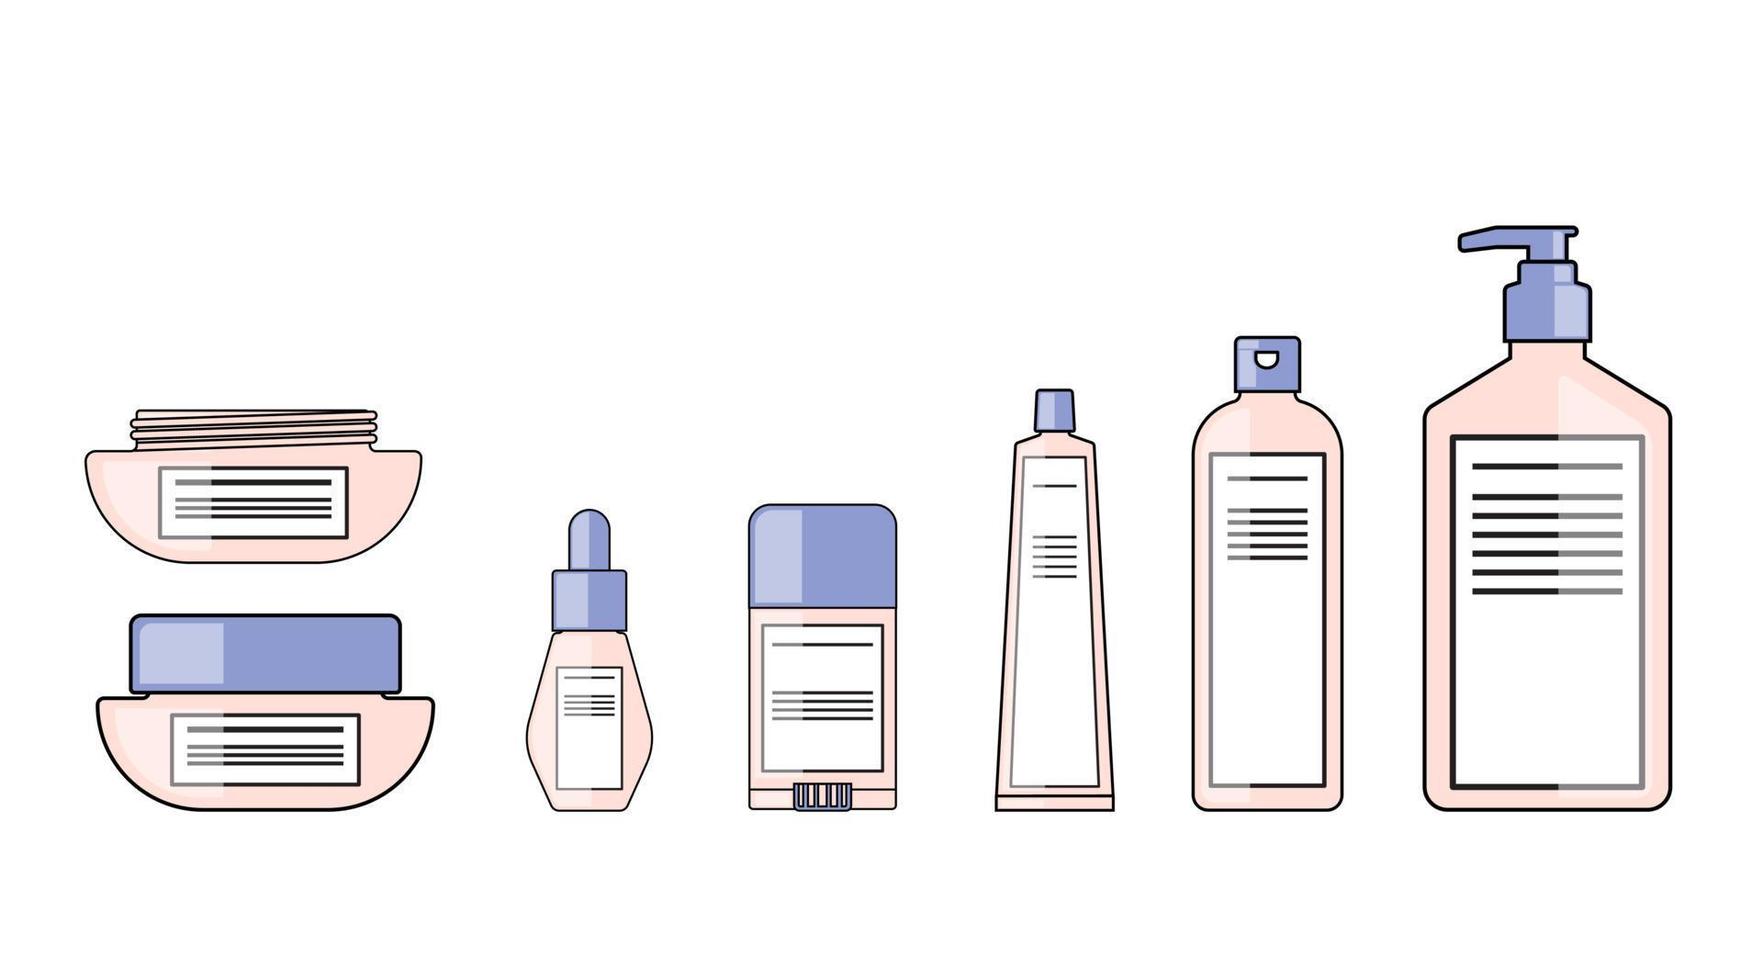 farb- und umrisskörperlotionen, serum, sonnencreme, cremeverpackungspumpflasche kosmetisches flaches design vektor